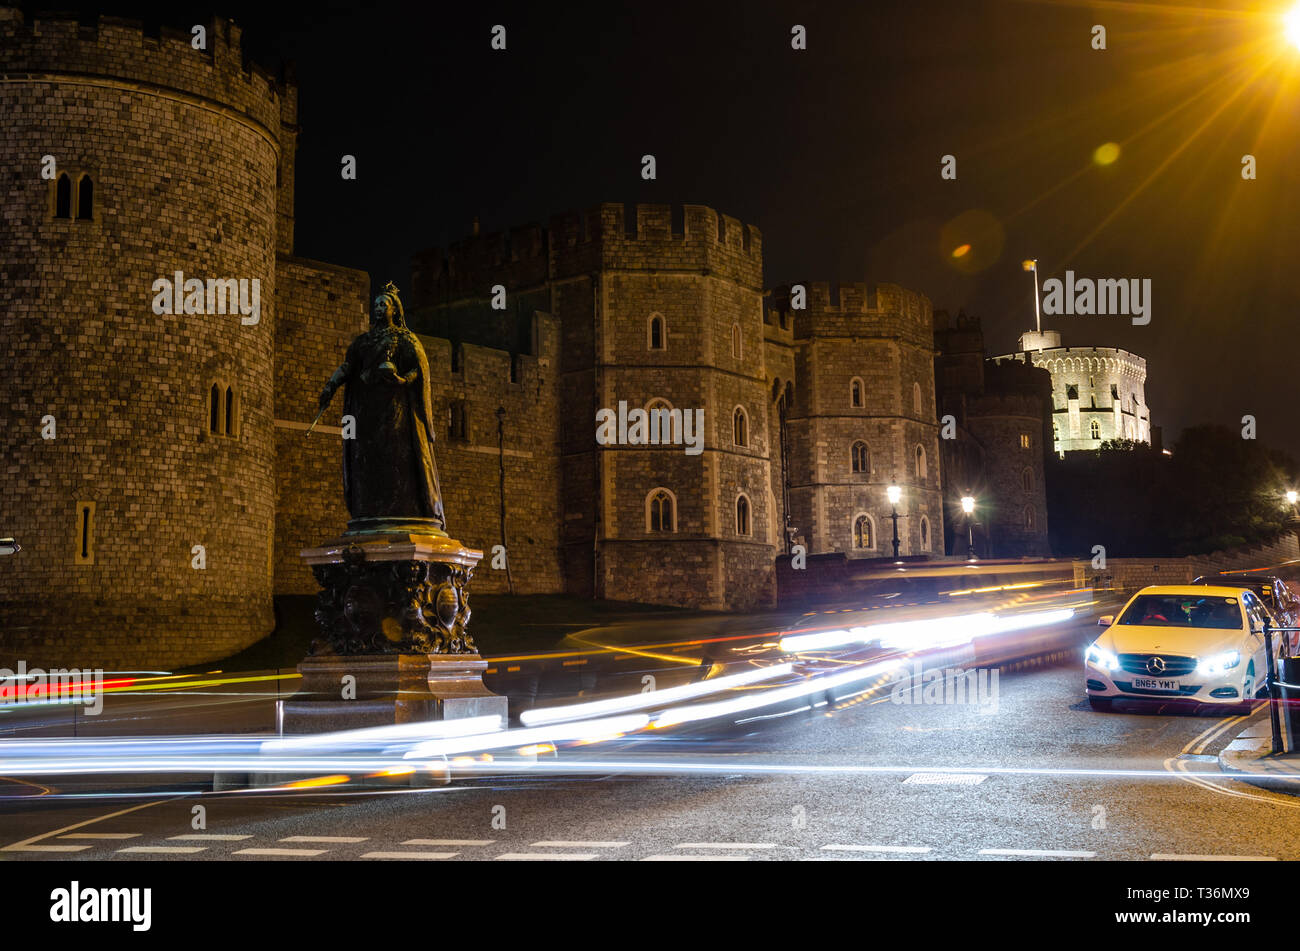 Una lunga esposizione shot della statua della regina Victoria al di fuori del Castello di Windsor di notte che conduce alla luce sentieri a sinistra passando le automobili. Foto Stock